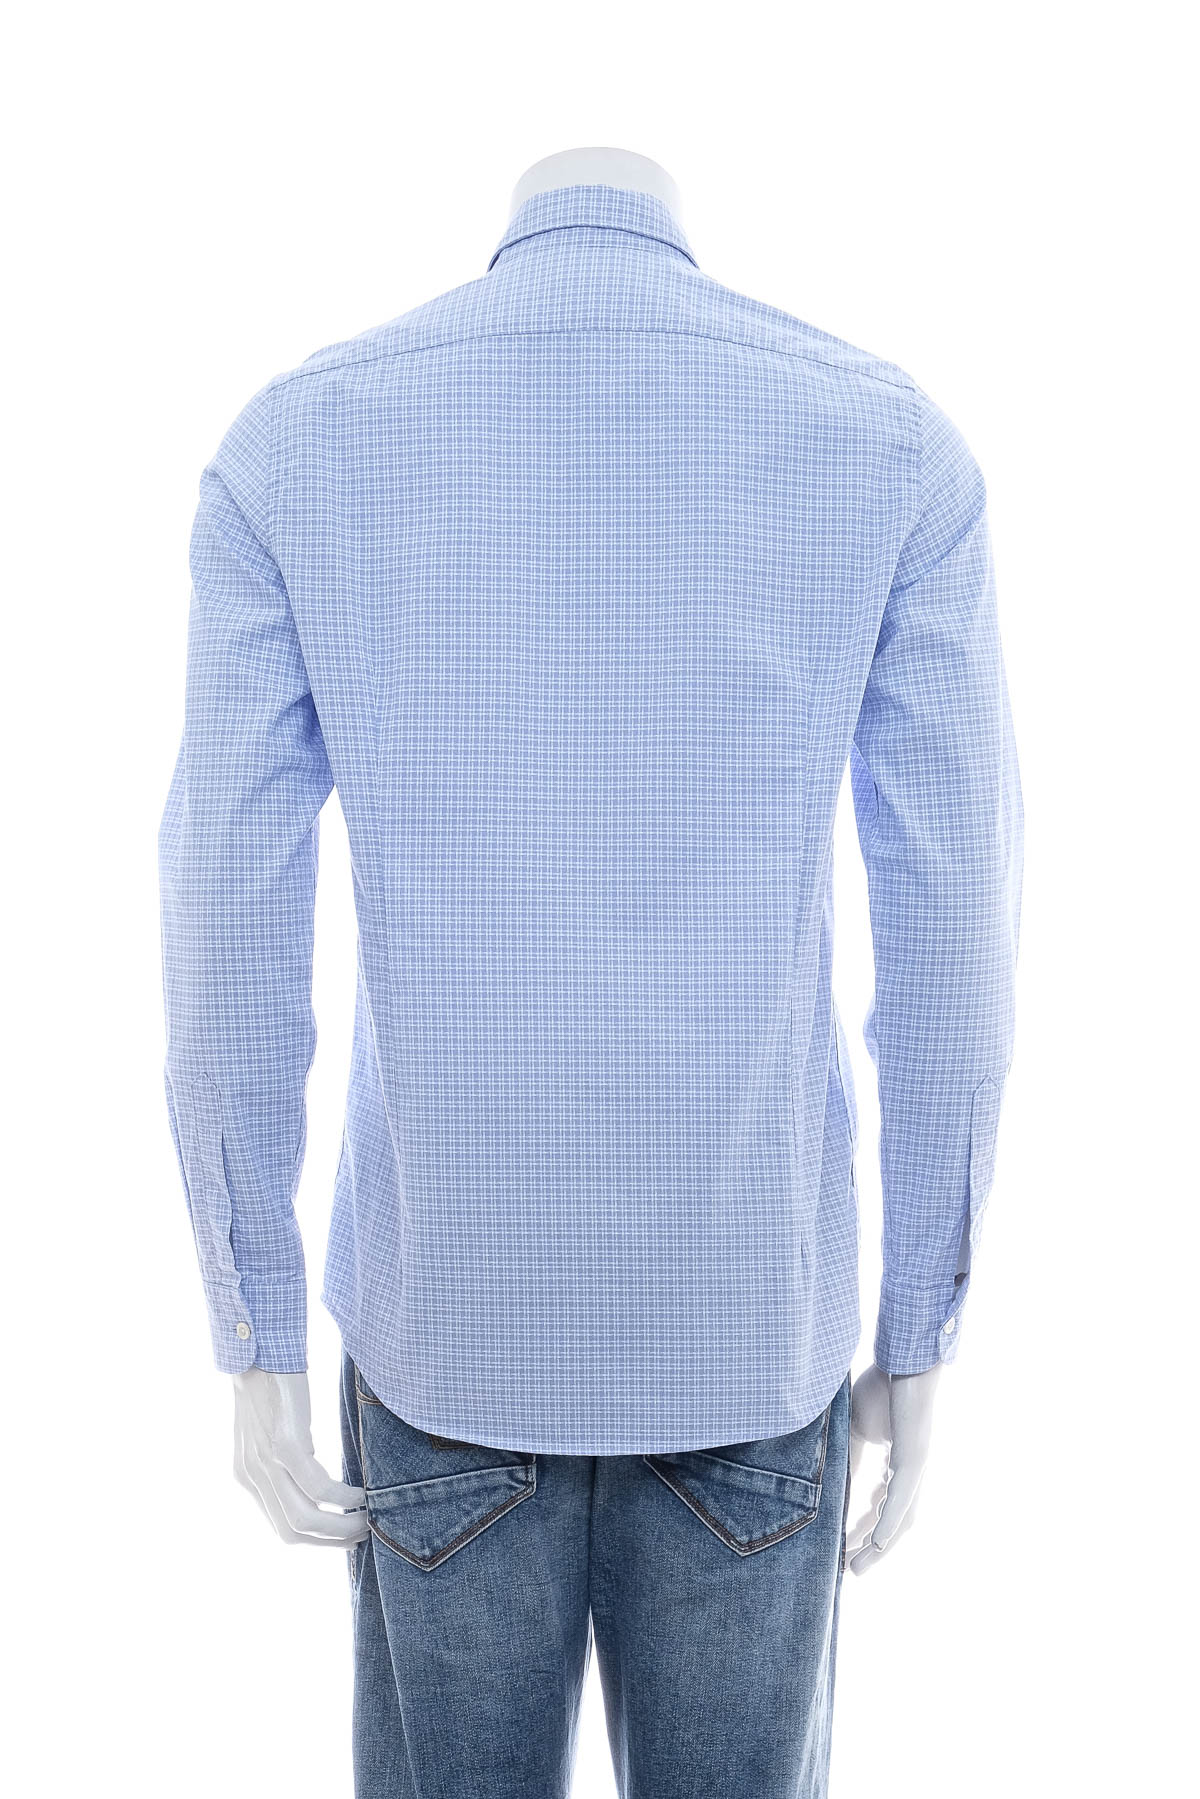 Men's shirt - Grigio - 1